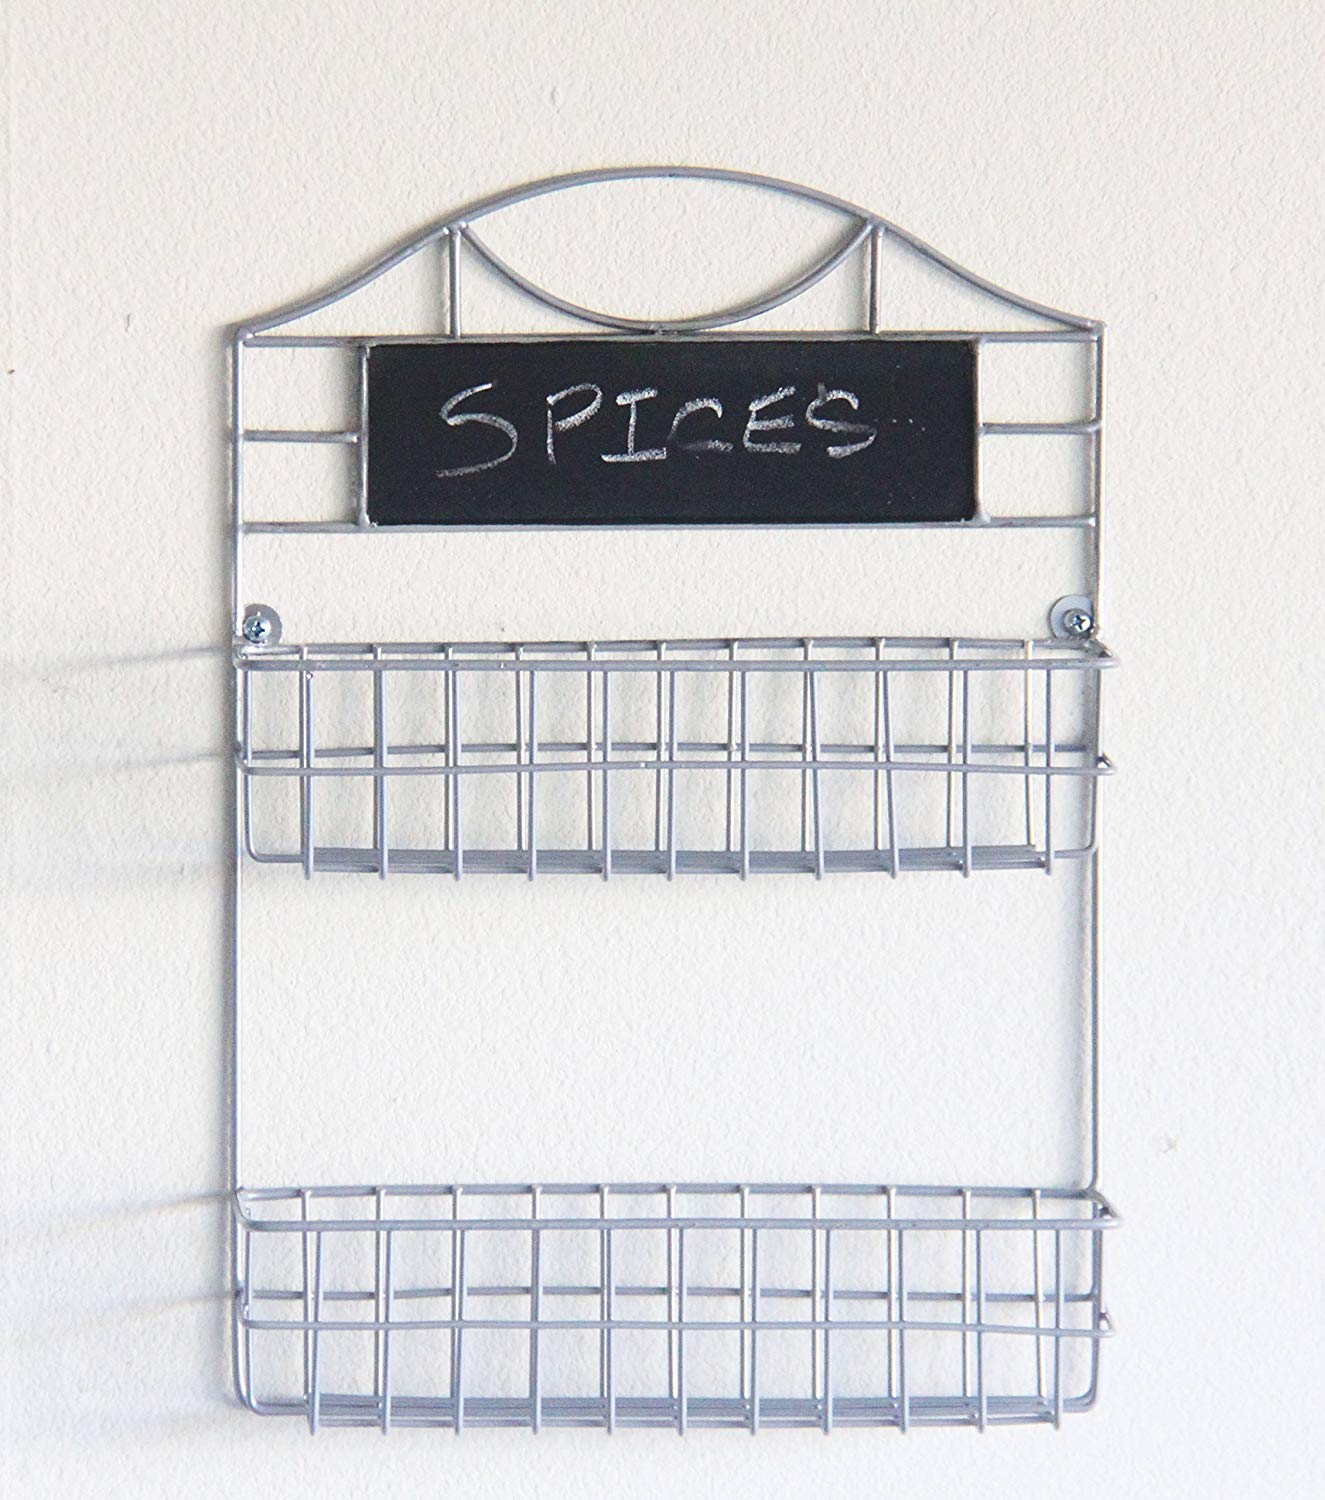 Wall Mounted 2-tier Universal Rack with Chalkboard - Kitchen, Spices, Mail Holder, Crafts Storage Organizer Basket Shelf